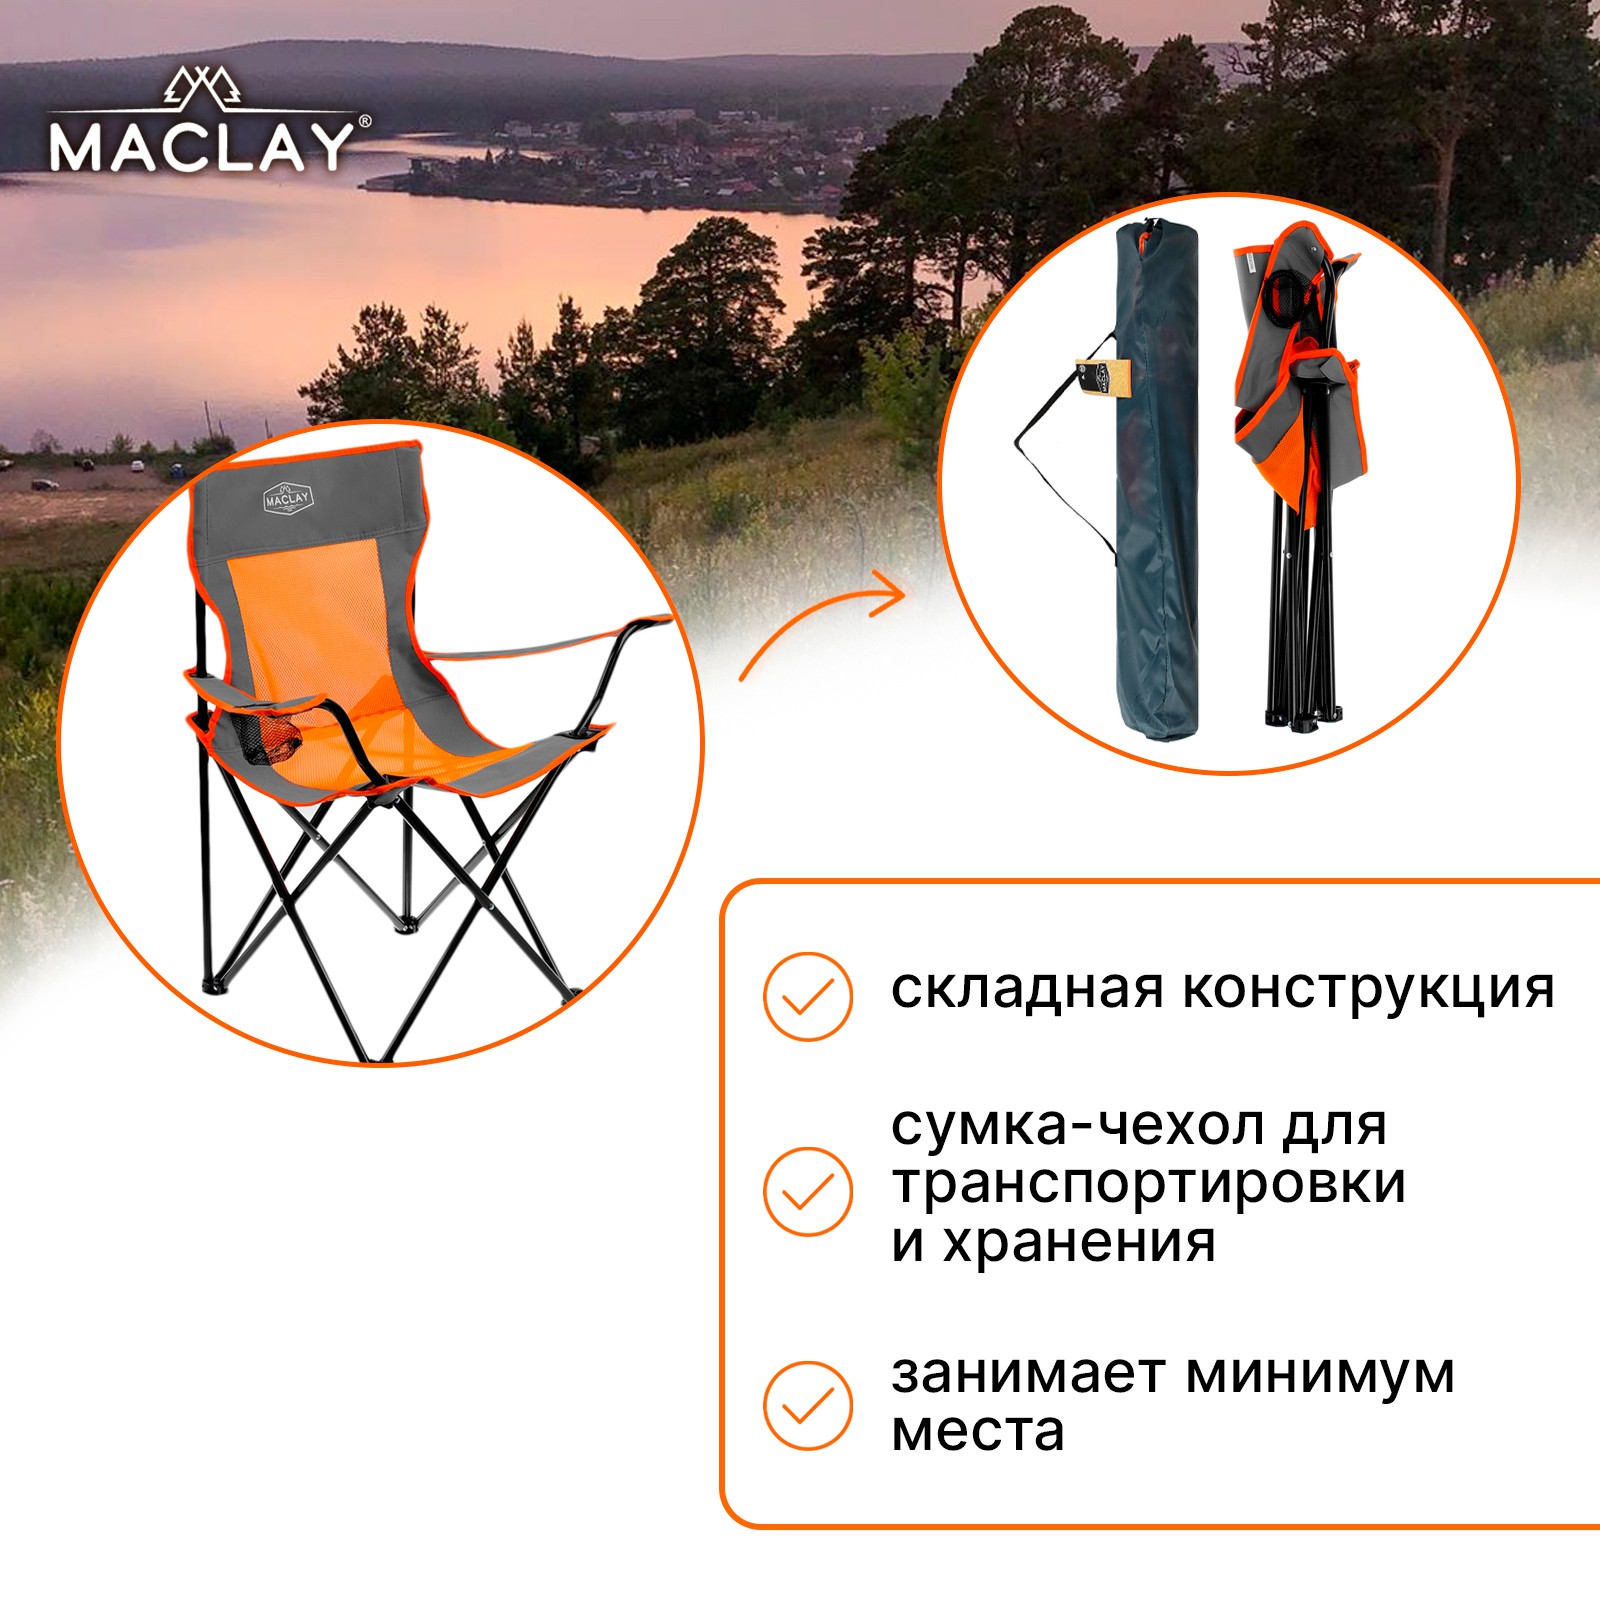 Кресло Maclay туристическое складное с подстаканником р. 50 х 50 х 80 см до 100 кг - фото 3